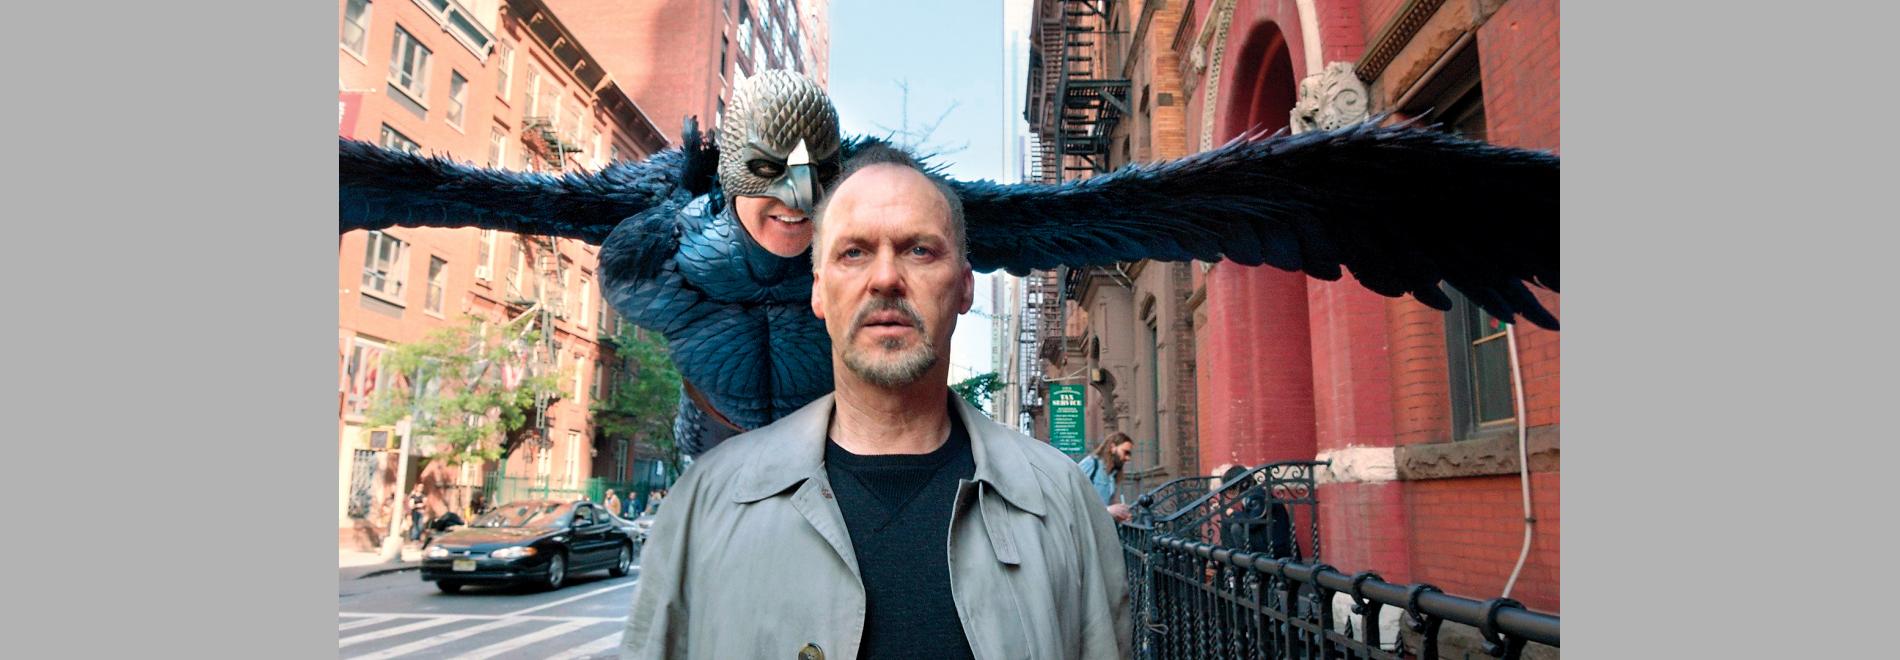 Birdman or (The Unexpected Virtue of Ignorance) (Alejandro González Iñárritu, 2014)